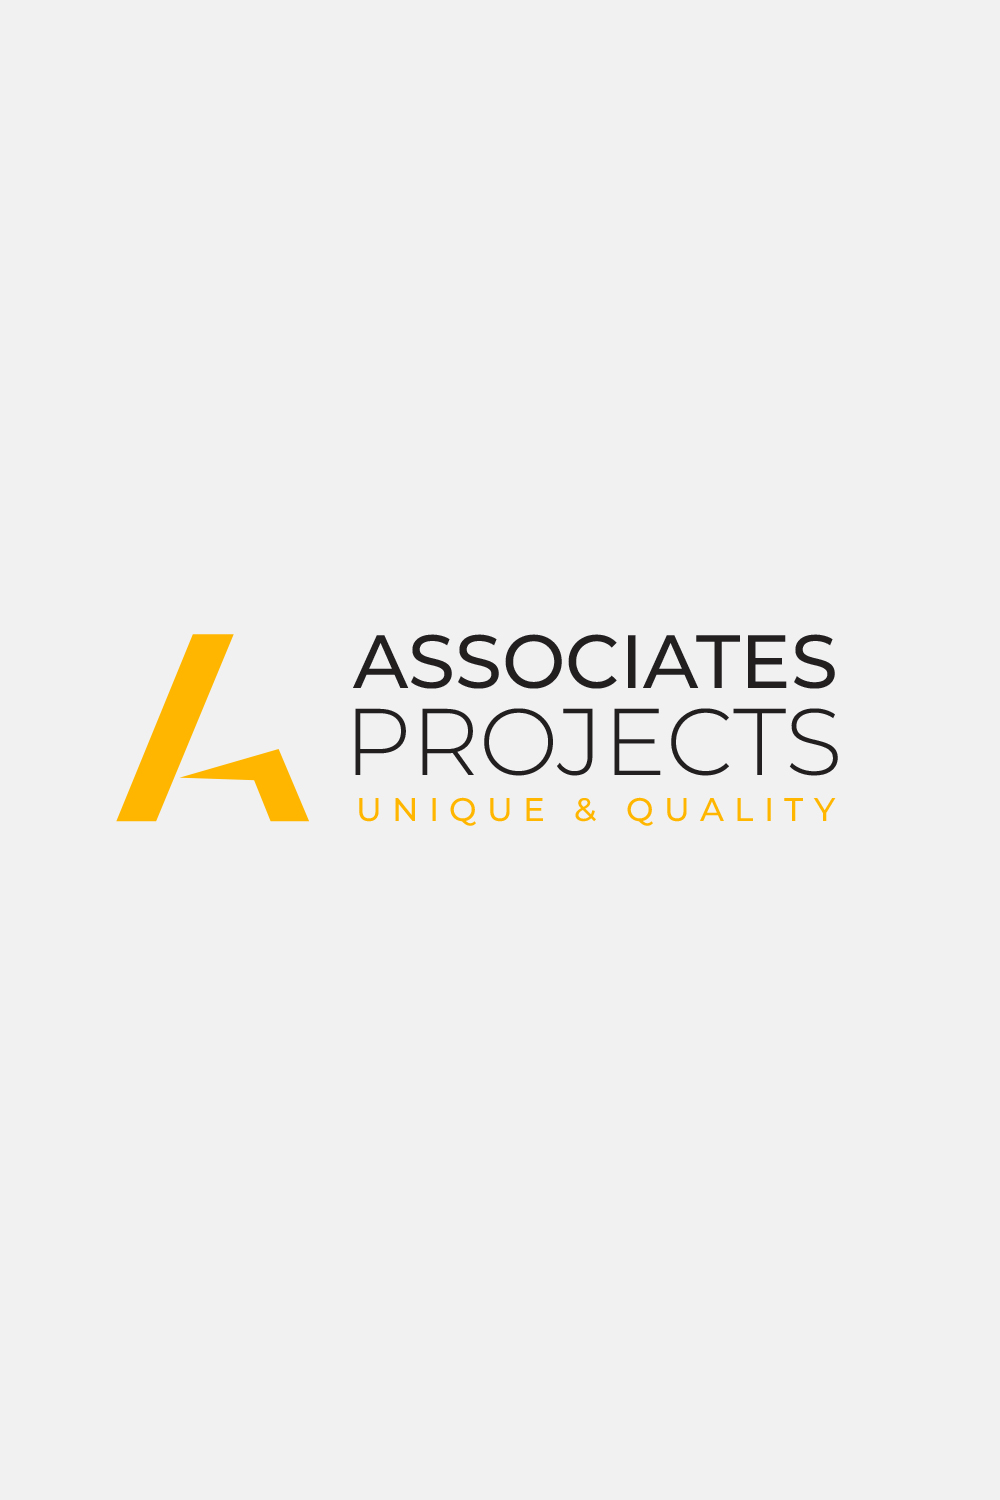 Associates Project logo design pinterest preview image.